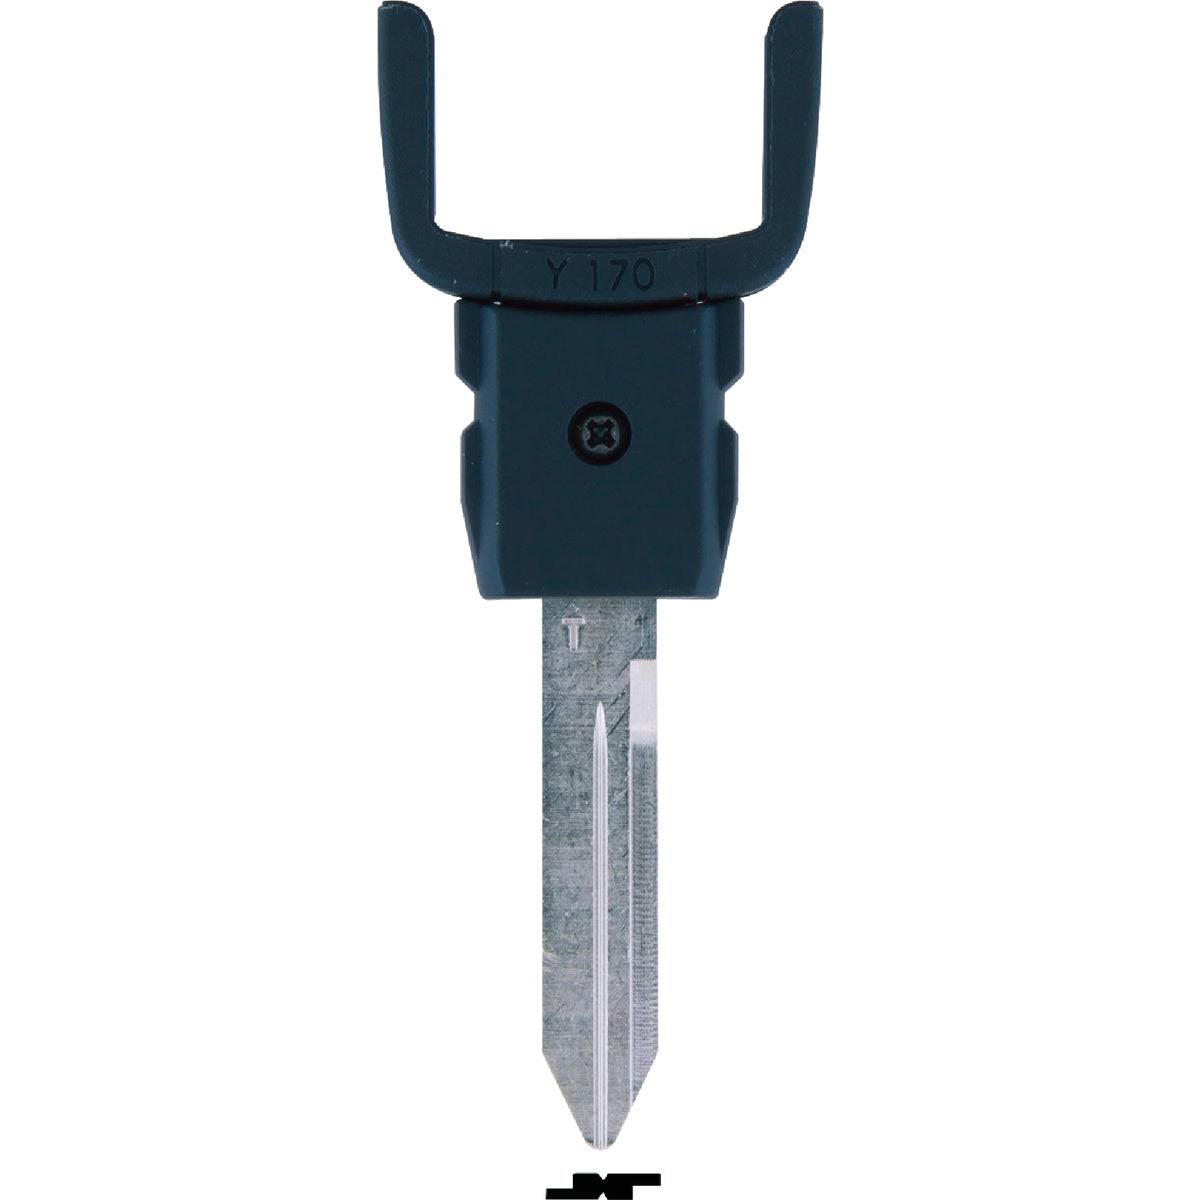 Ilco Chrysler High Security Key Blade